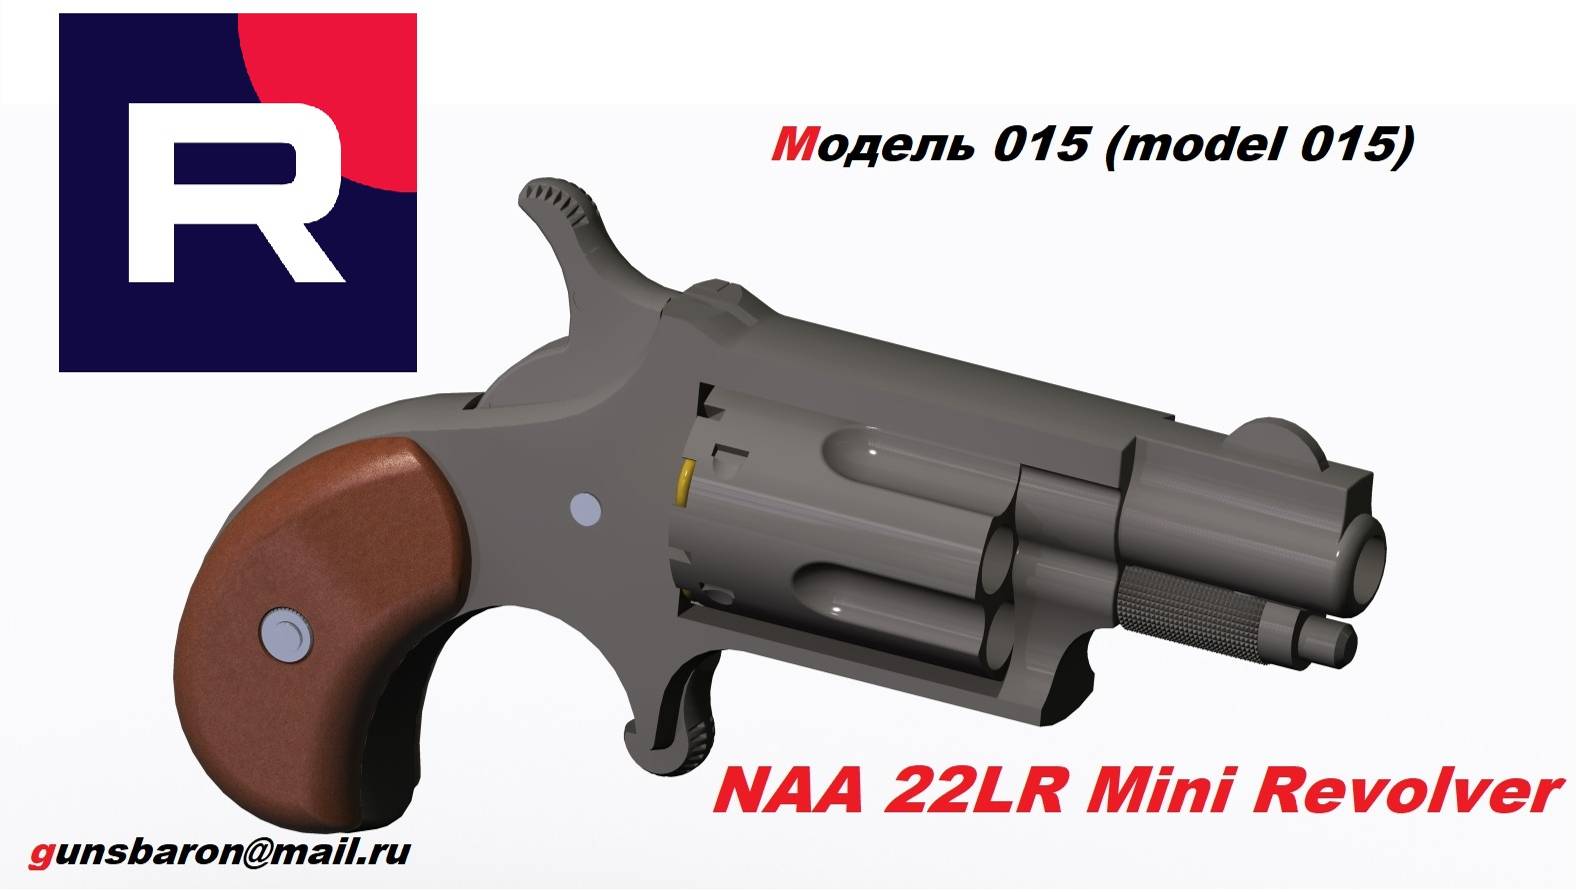 3D Model NAA 22LR Mini Revolver. Triotec. Модель 015